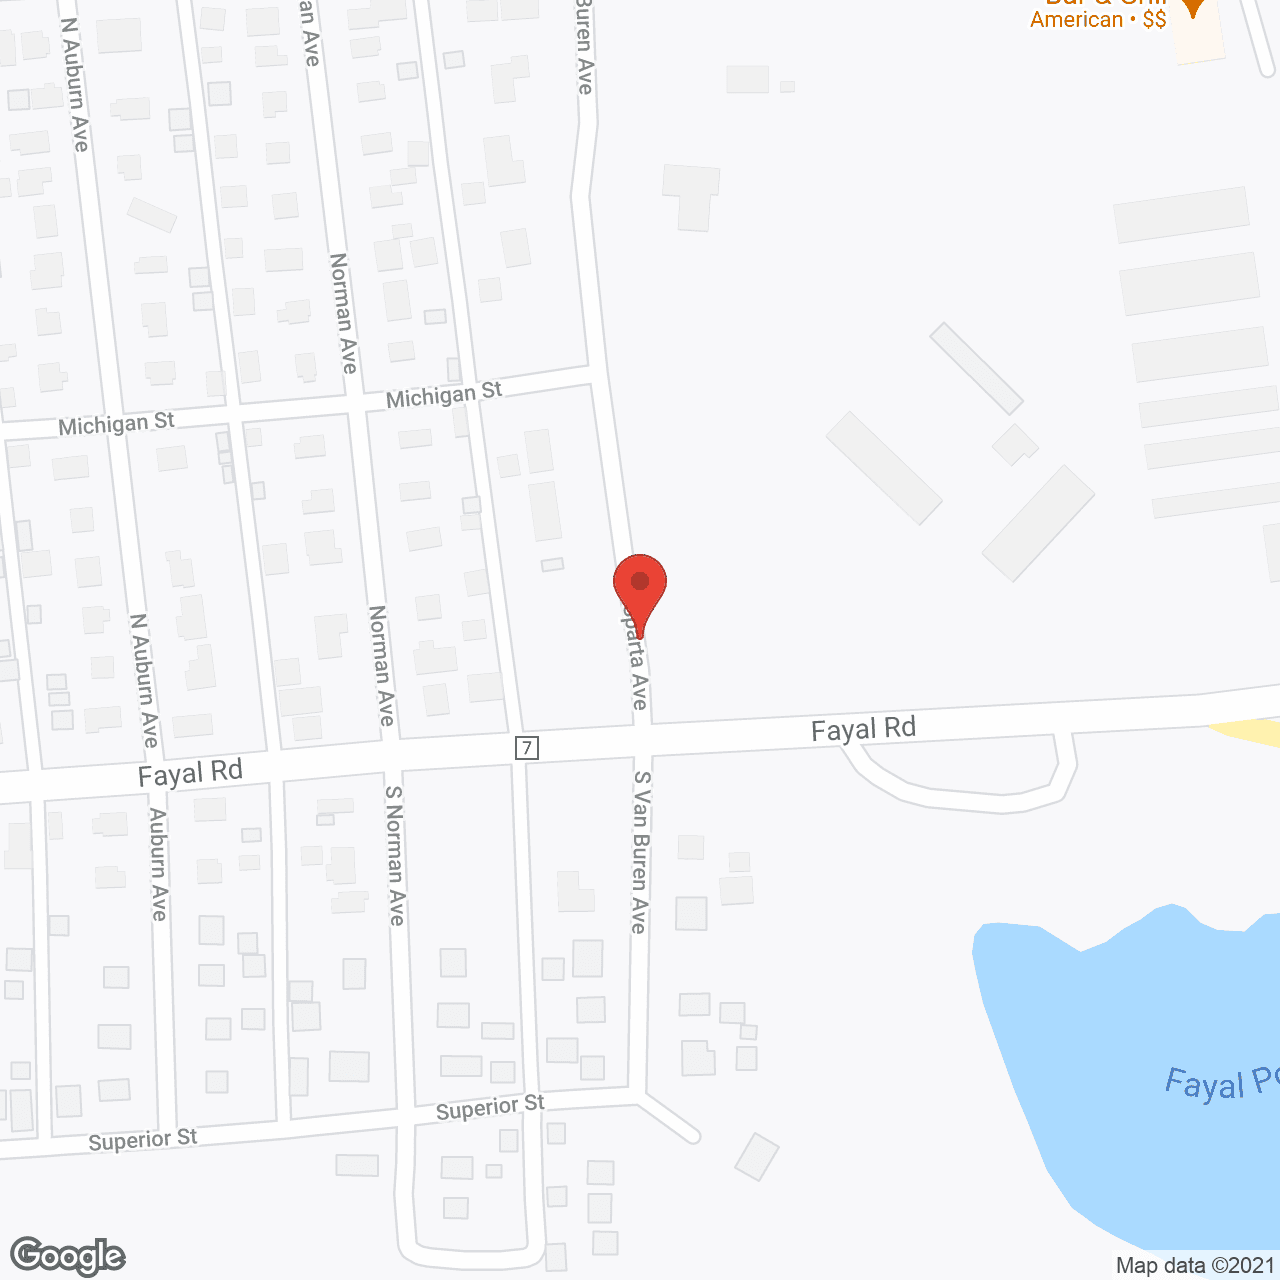 Eastview in google map